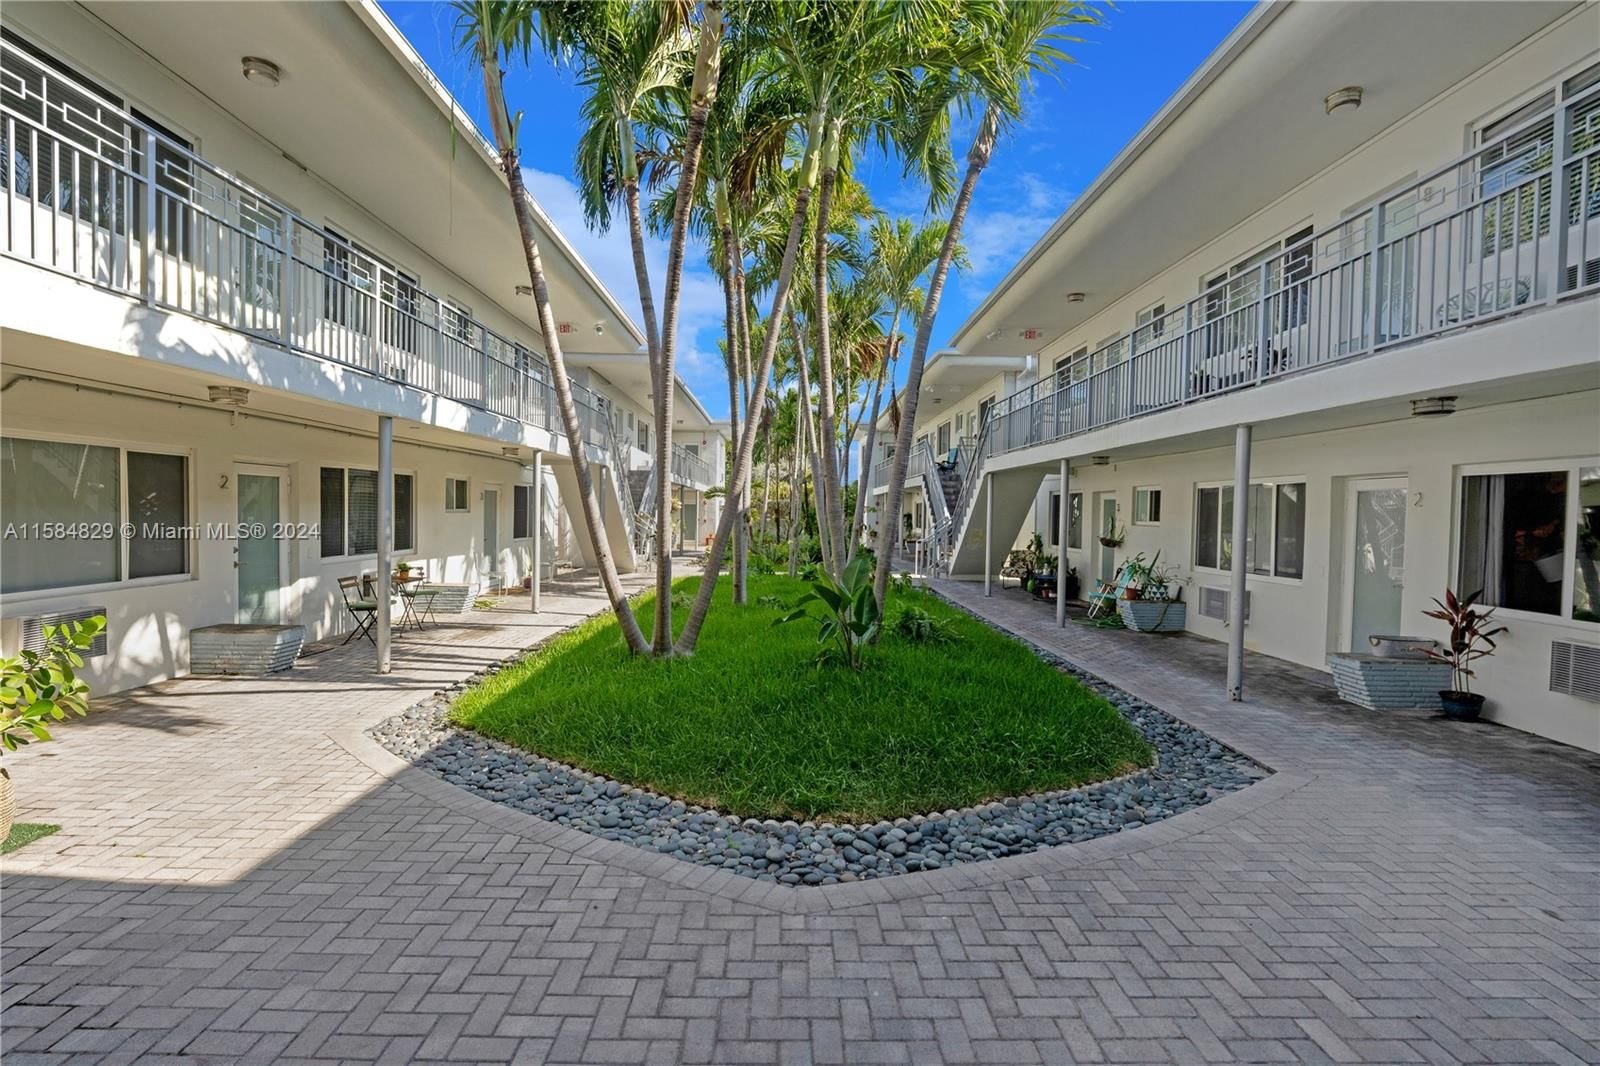 Real estate property located at 320 86th St #10, Miami-Dade County, ALUNA CONDO, Miami Beach, FL